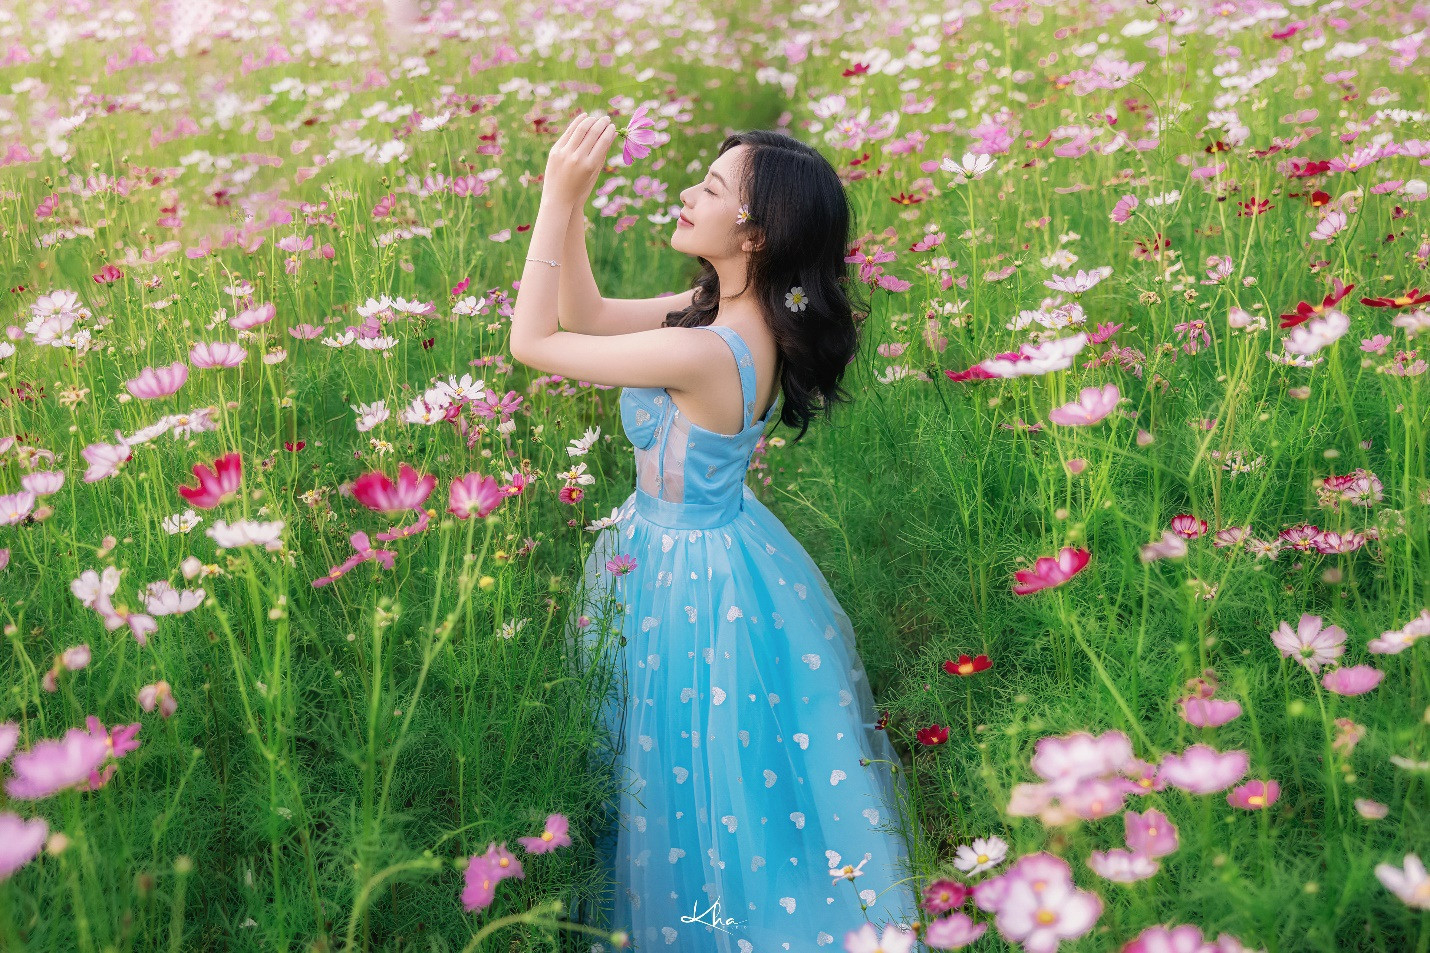 Thiếu nữ Kiên Giang khoe nét xuân thì giữa vườn hoa ngập sắc màu - 5